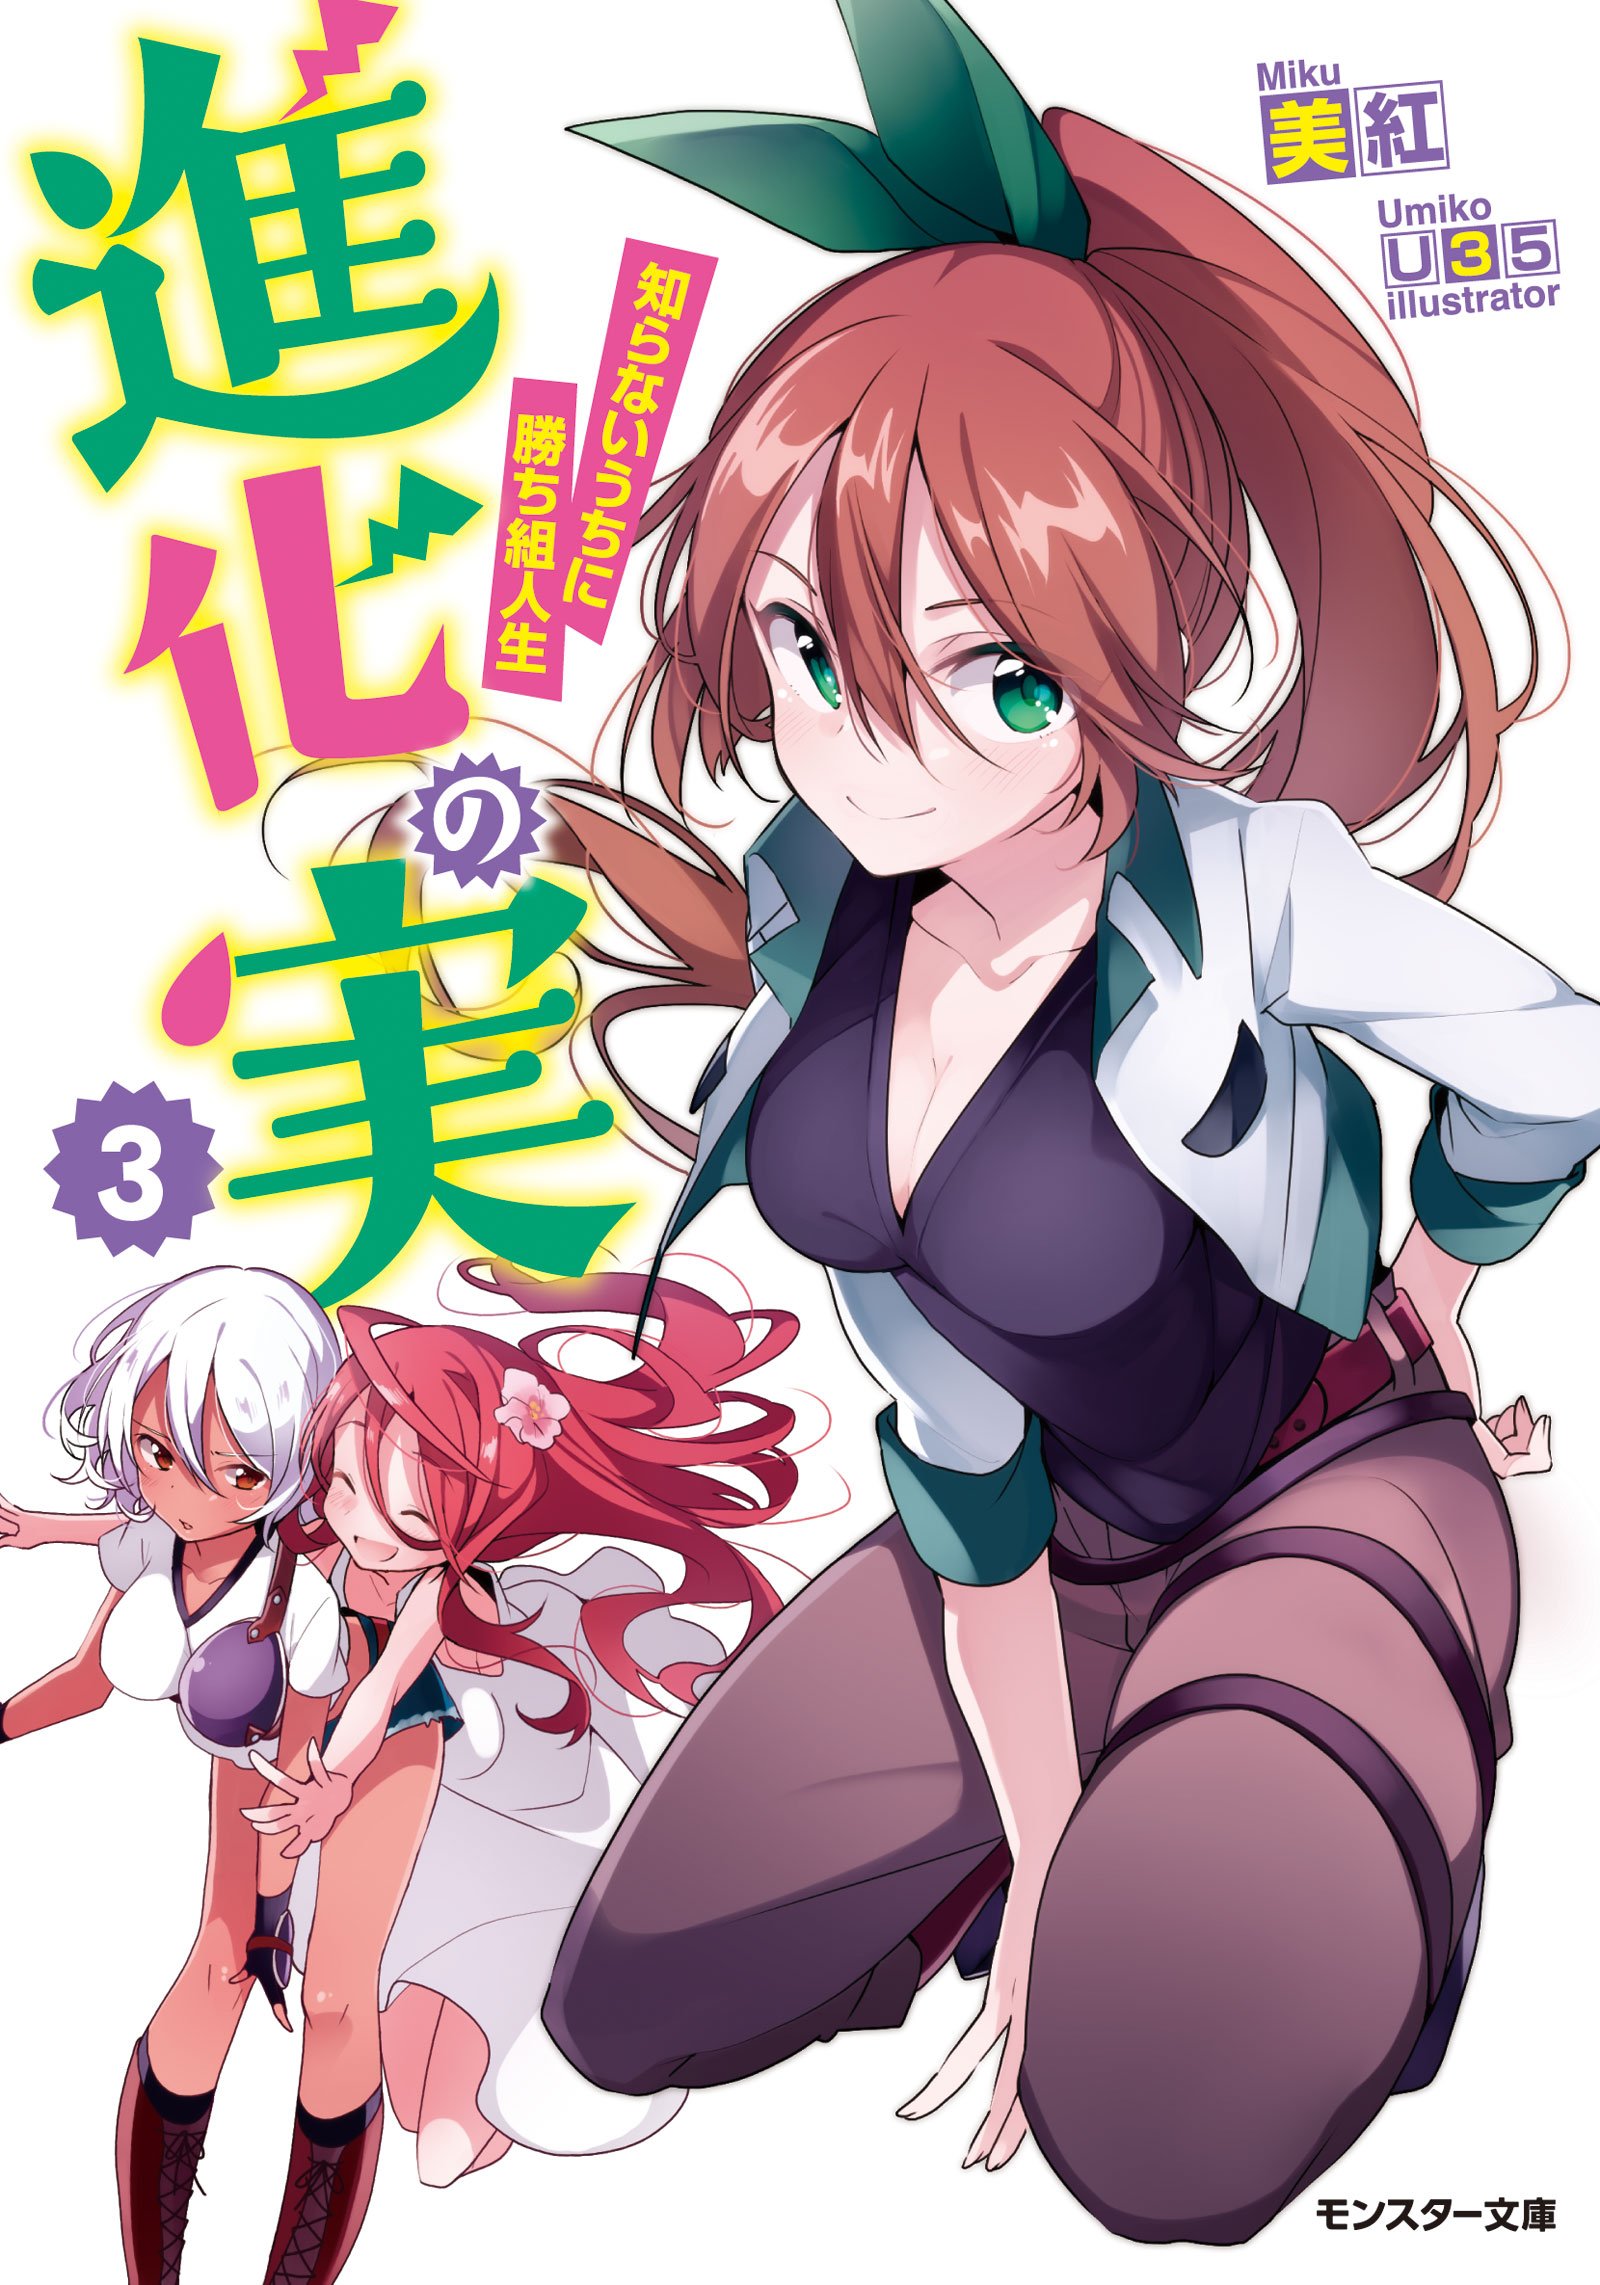 Light Novel Volume 3, Shinka no Mi Wiki